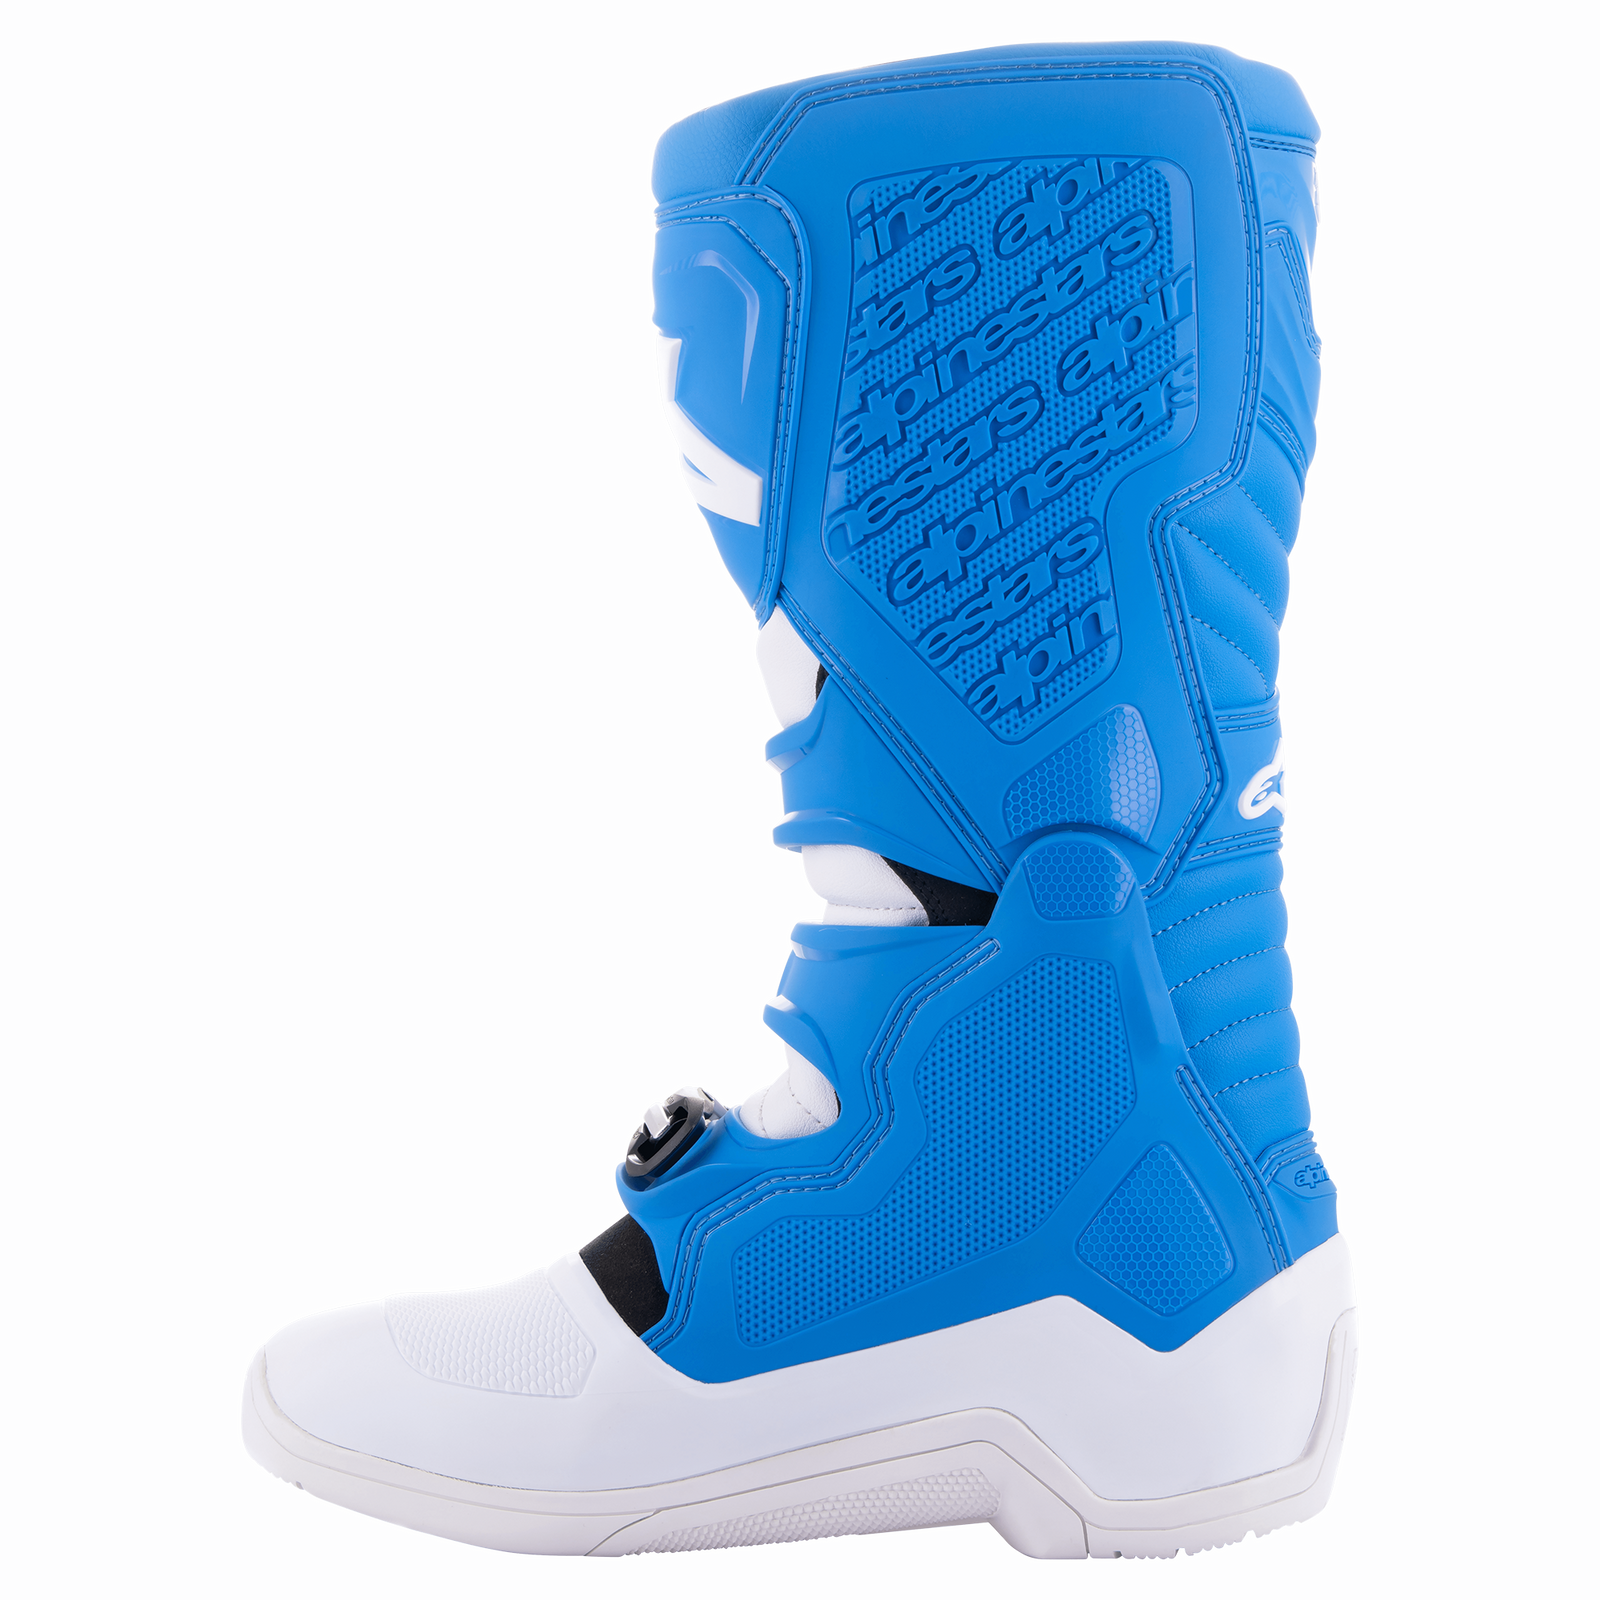 Tech 5 Boots